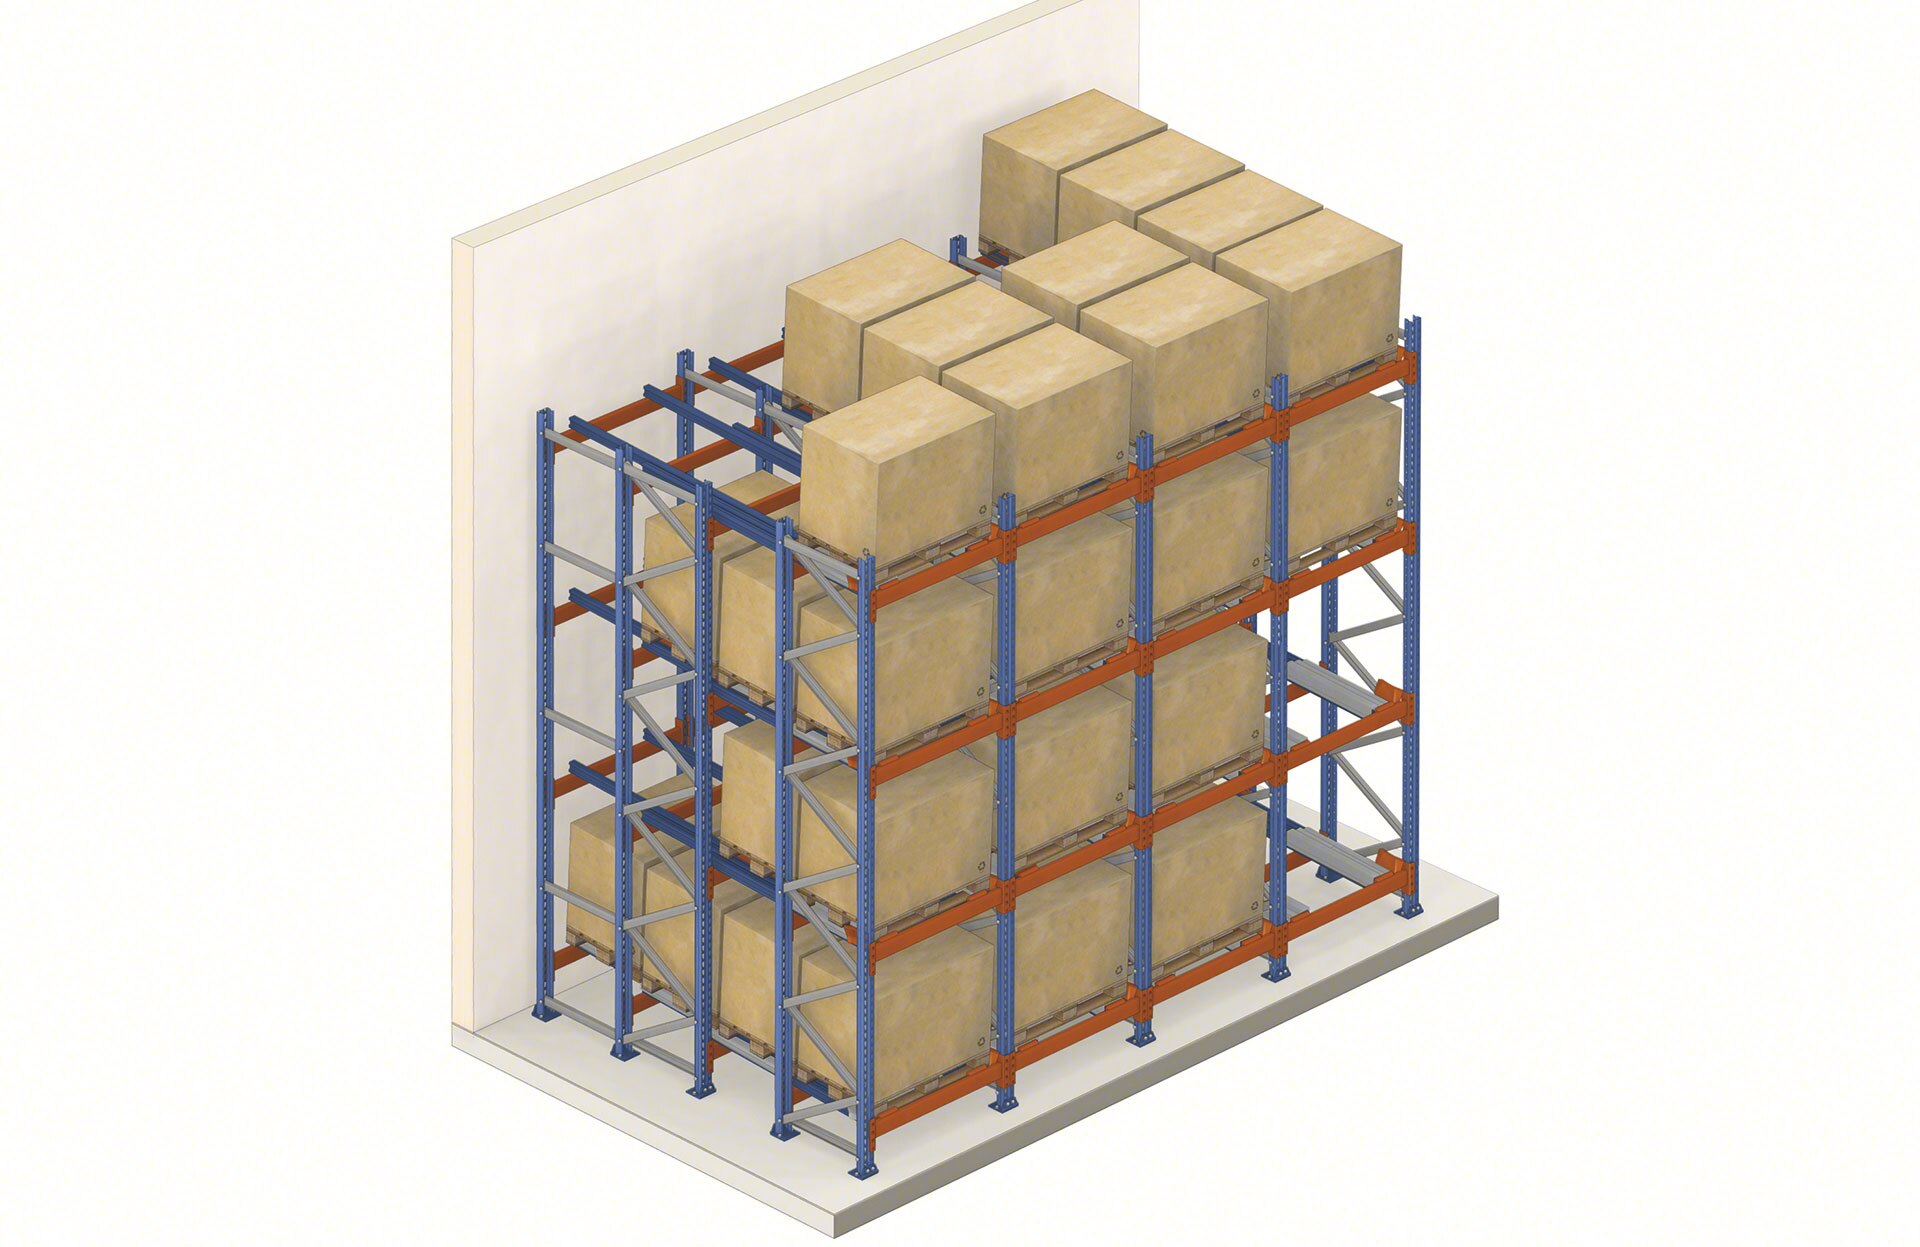 Einschubregale sind Kompaktlagersysteme, bei denen der Zugriff auf die Waren über einen einzigen Gang erfolgt